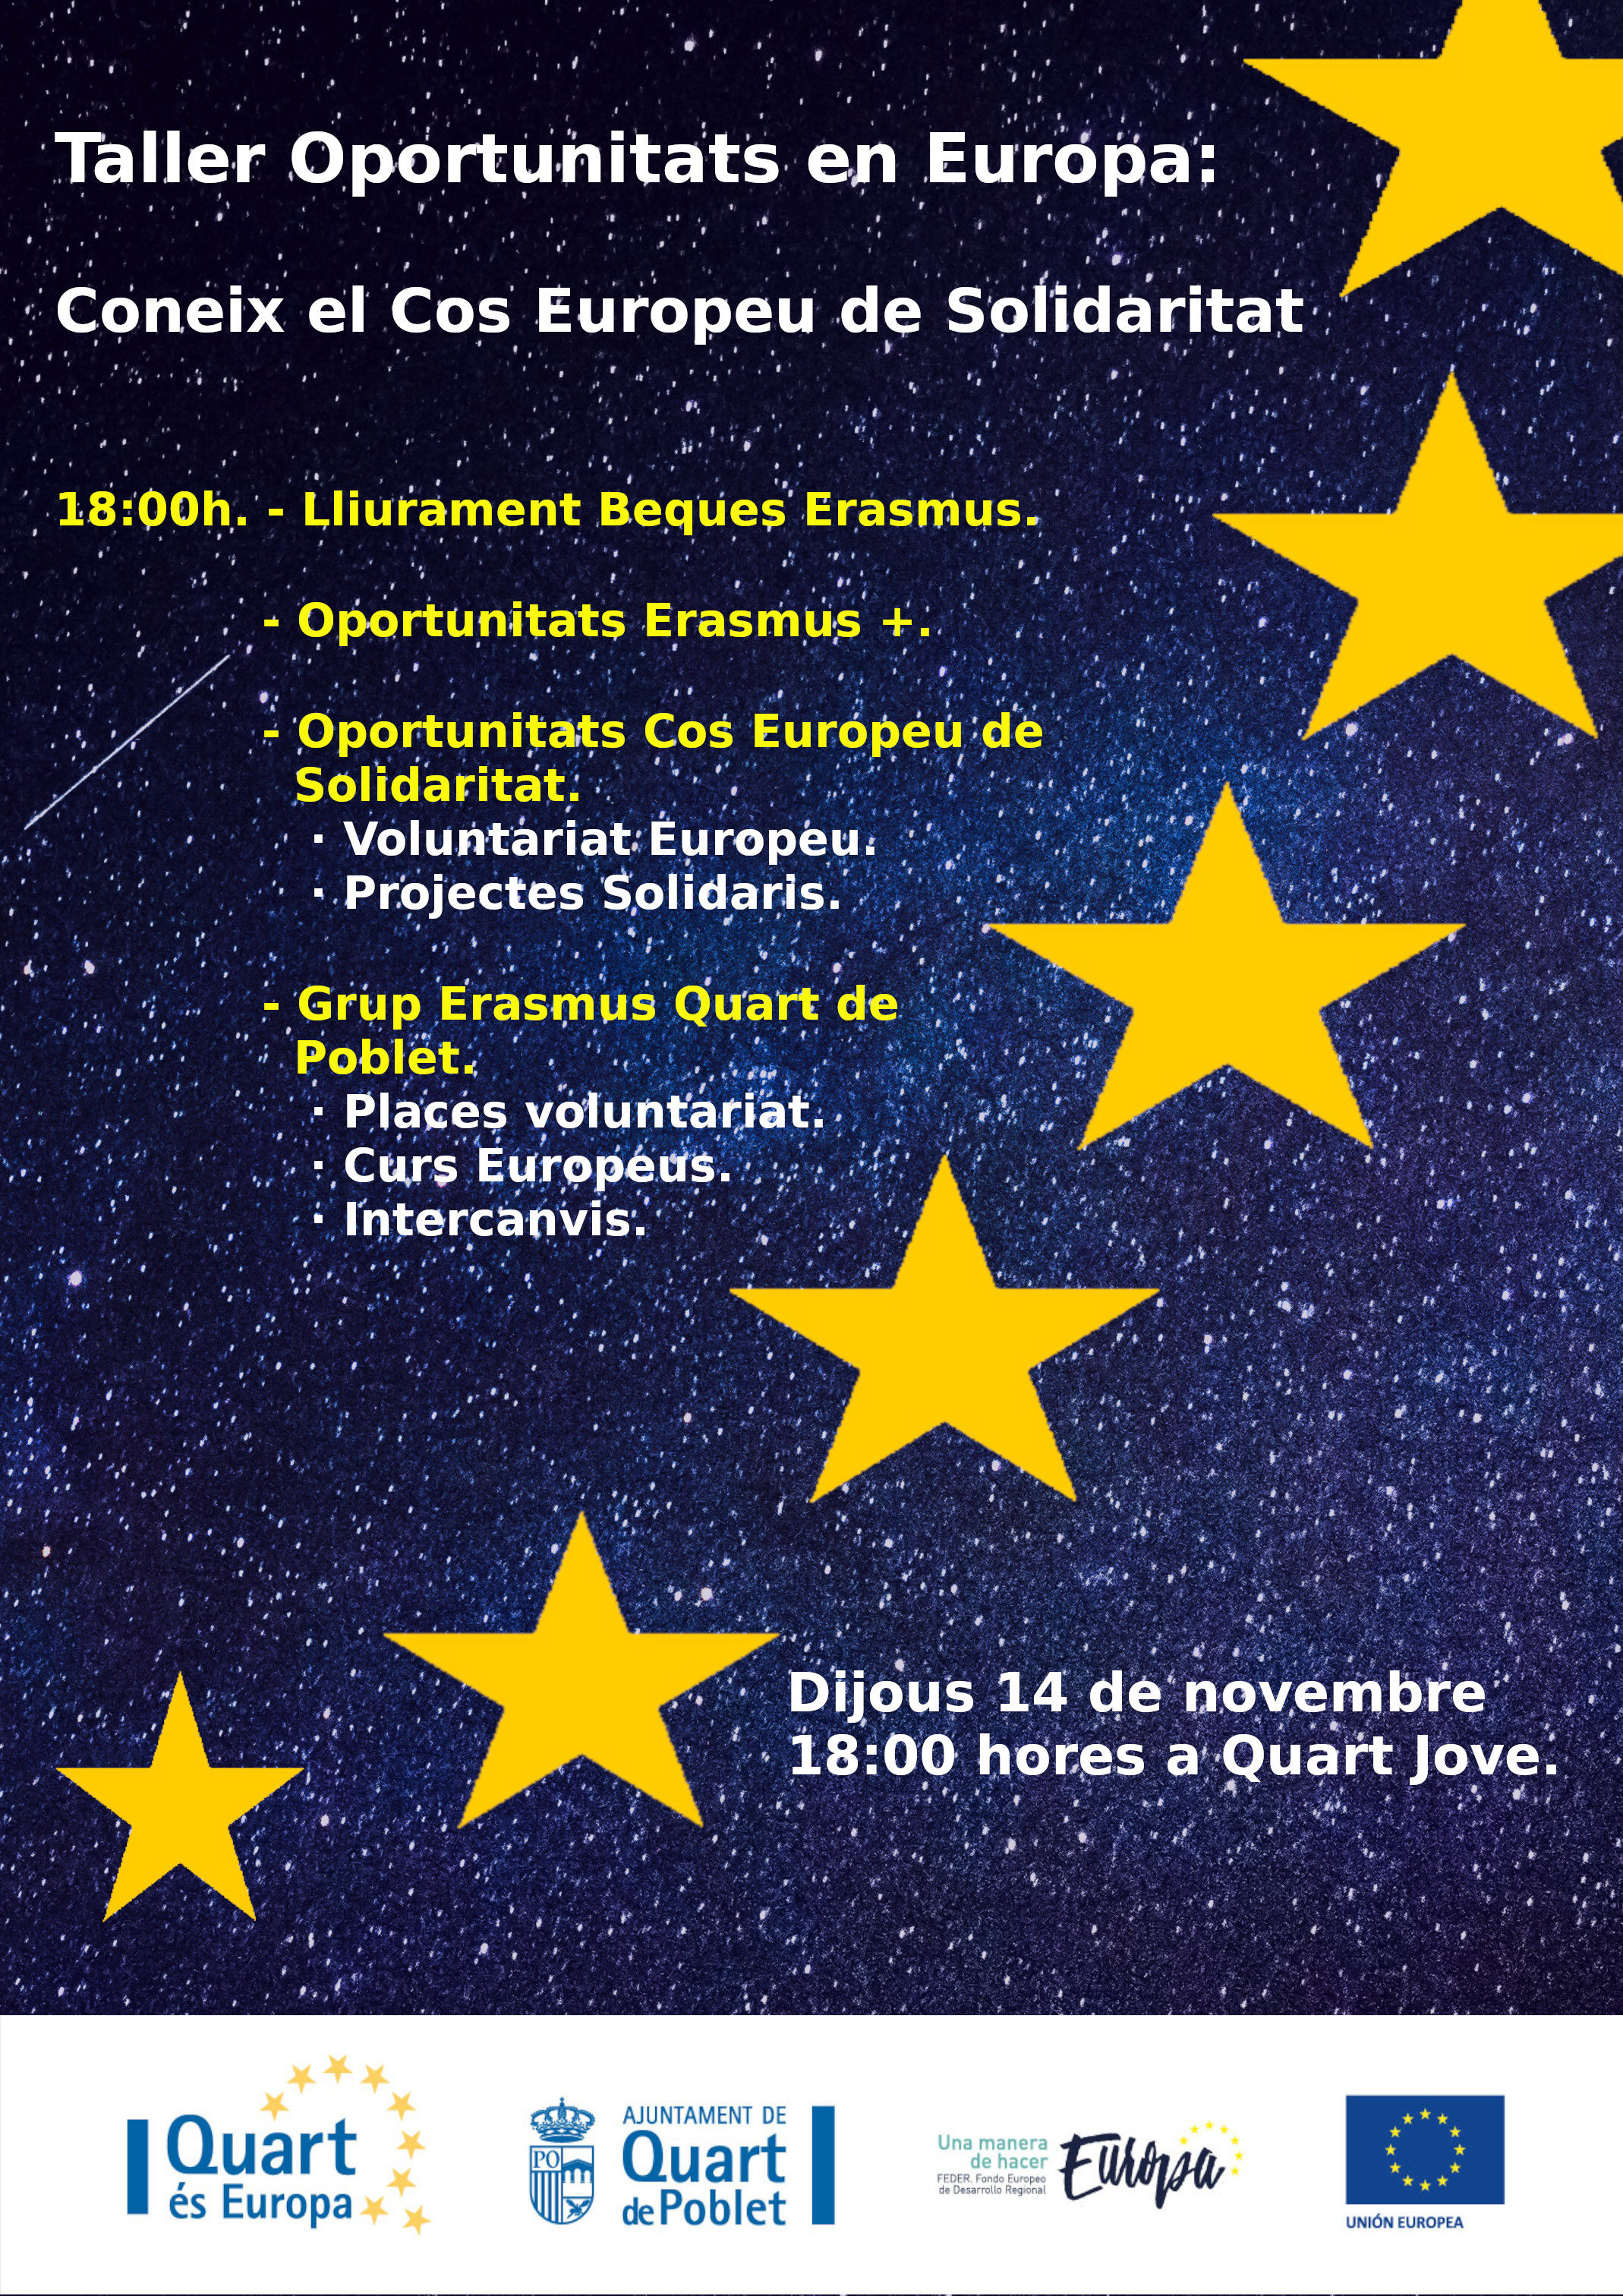 Taller Oportunitades en Europa, bajo el título "Conoce el Cuerpo Europeo de Solidaridad (CES)", jueves 14 de Noviembre en Quart de Poblet.